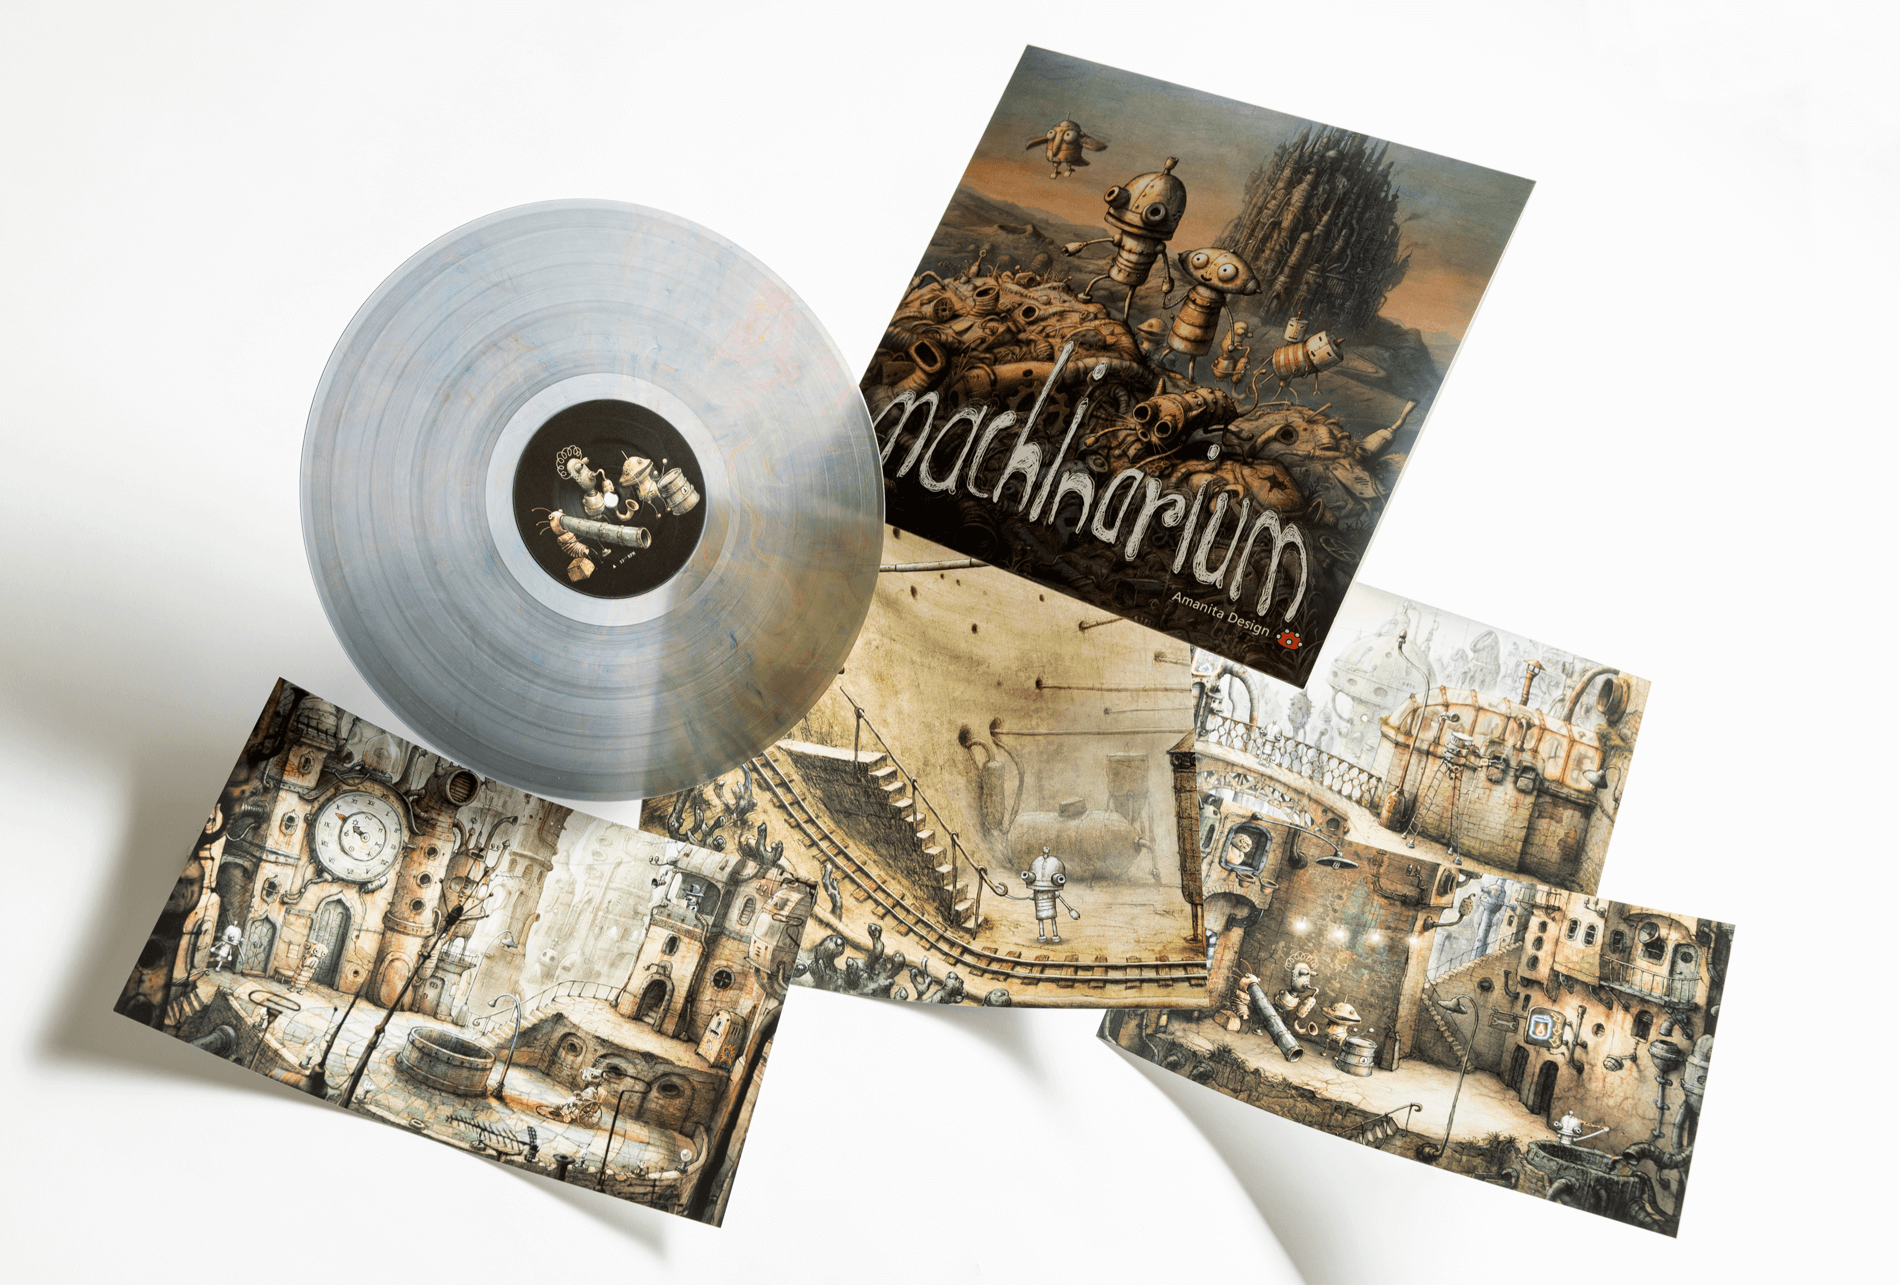 Machinarium Soundtrack